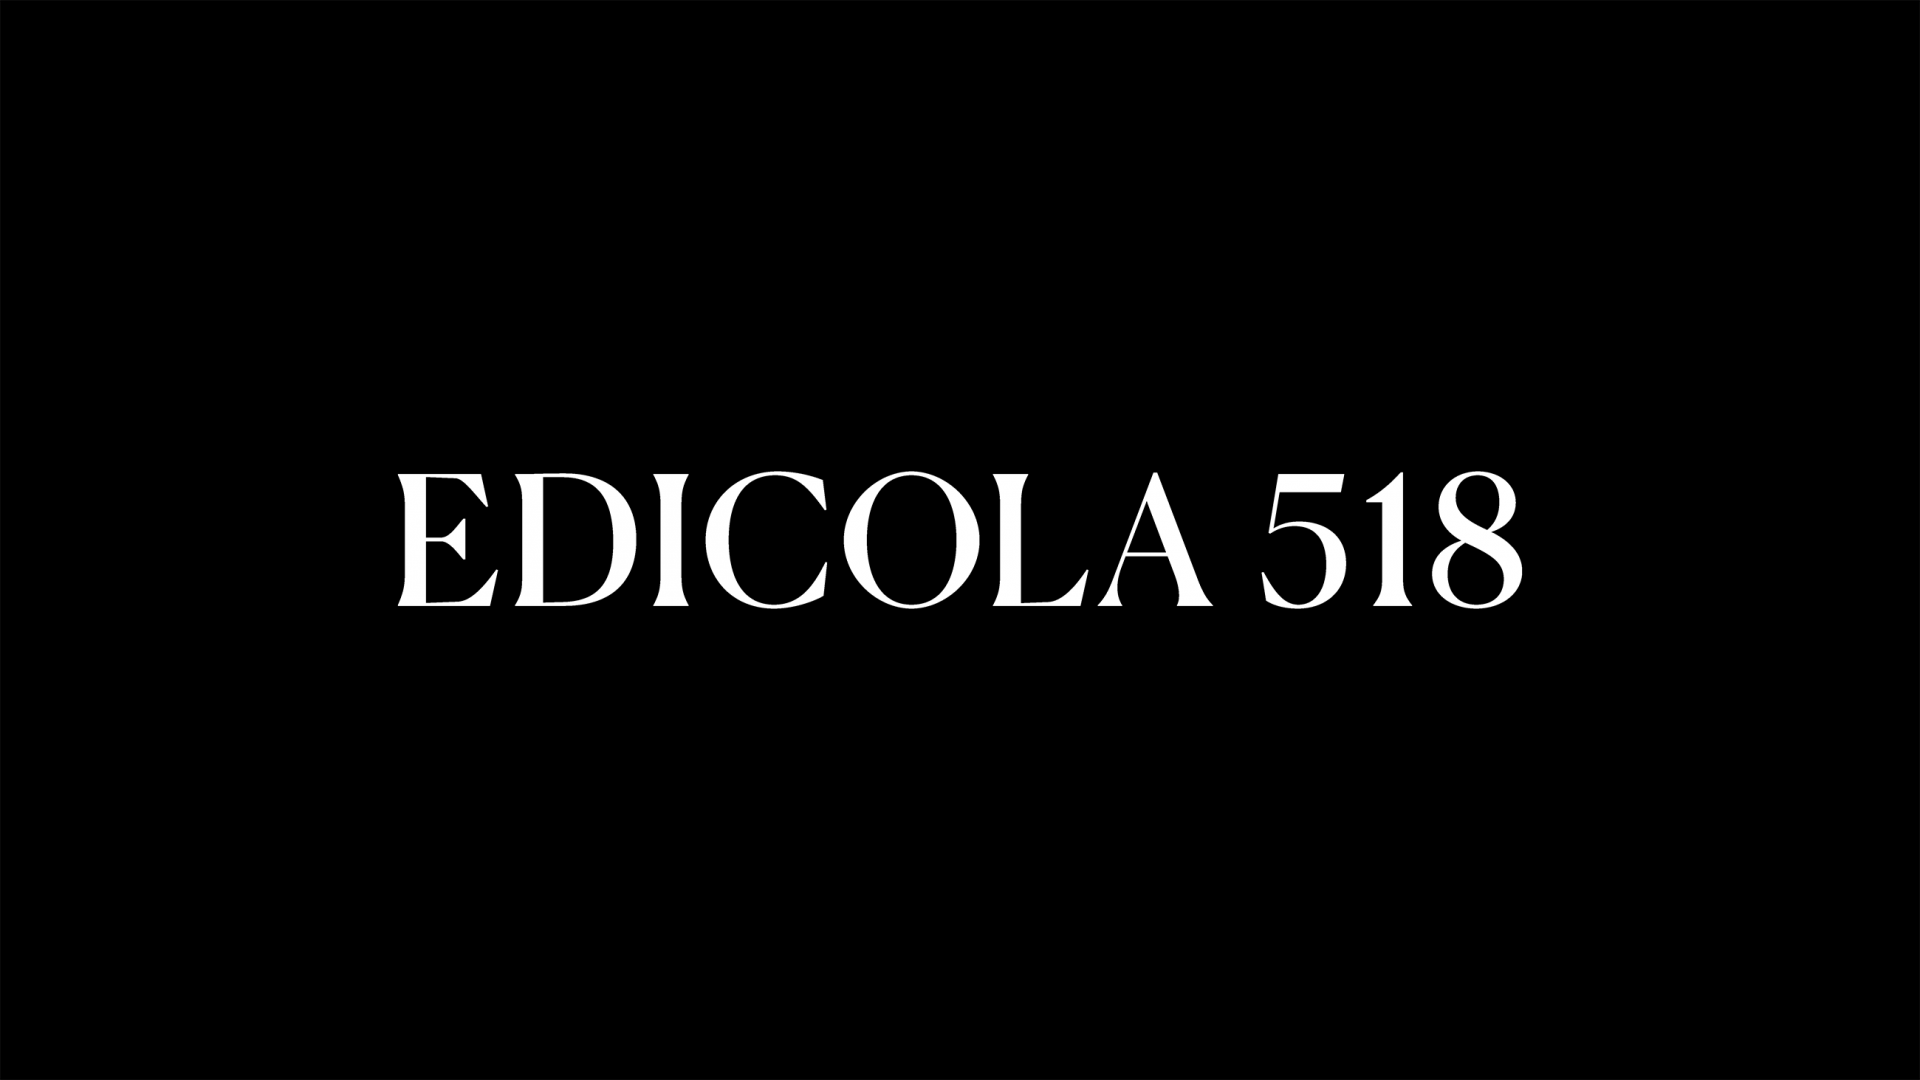 Edicola 518, Brand identity and website